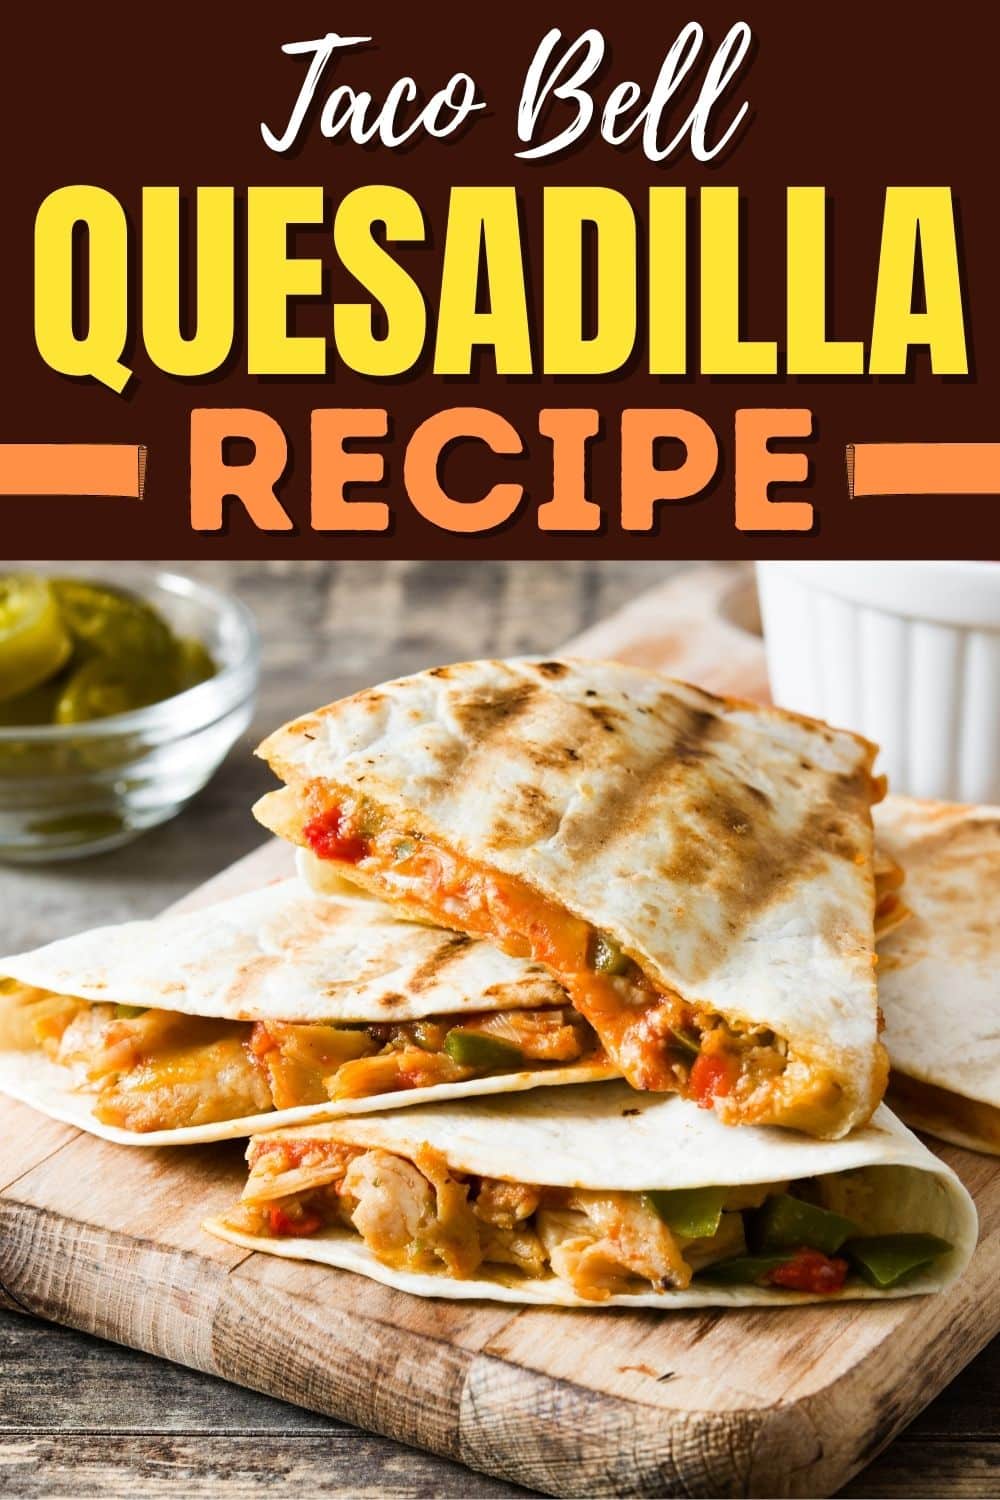 Taco Bell Quesadilla Recipe - Insanely Good